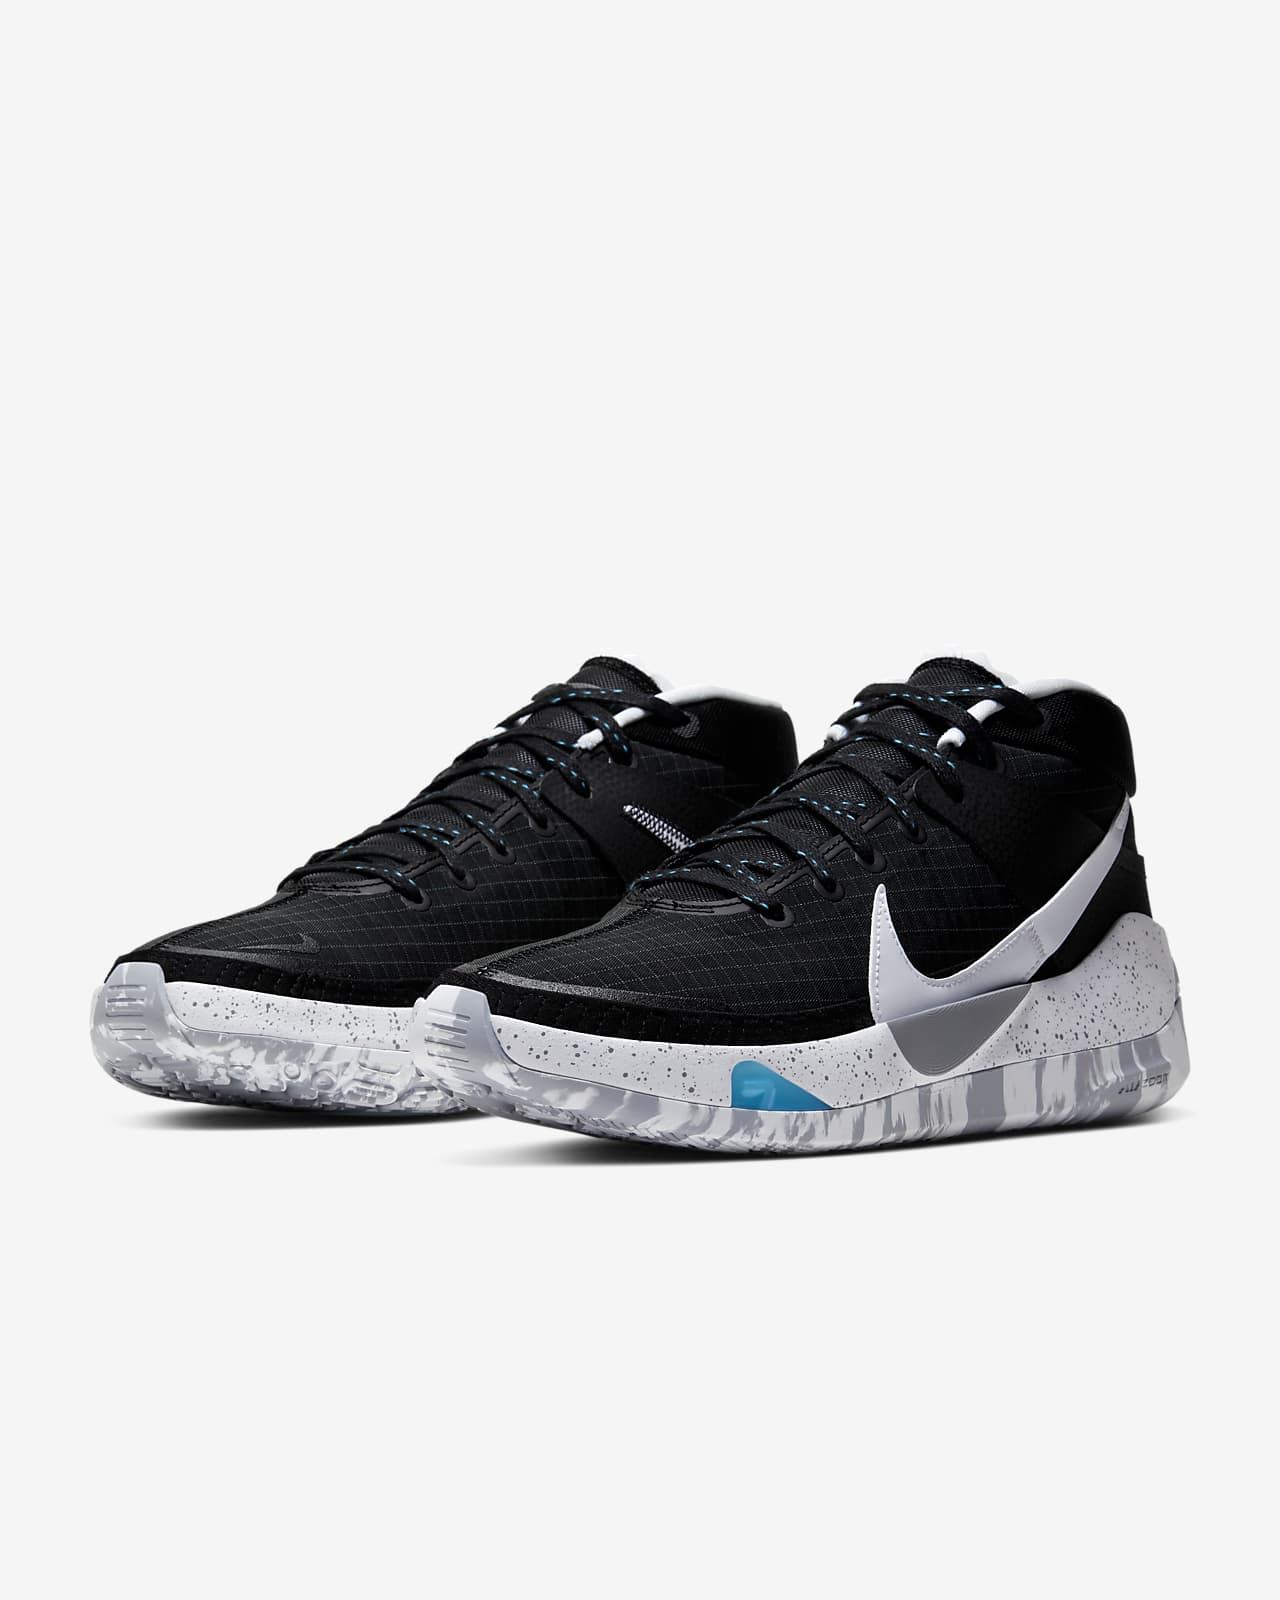 KD13 Basketball Shoes. Nike.com